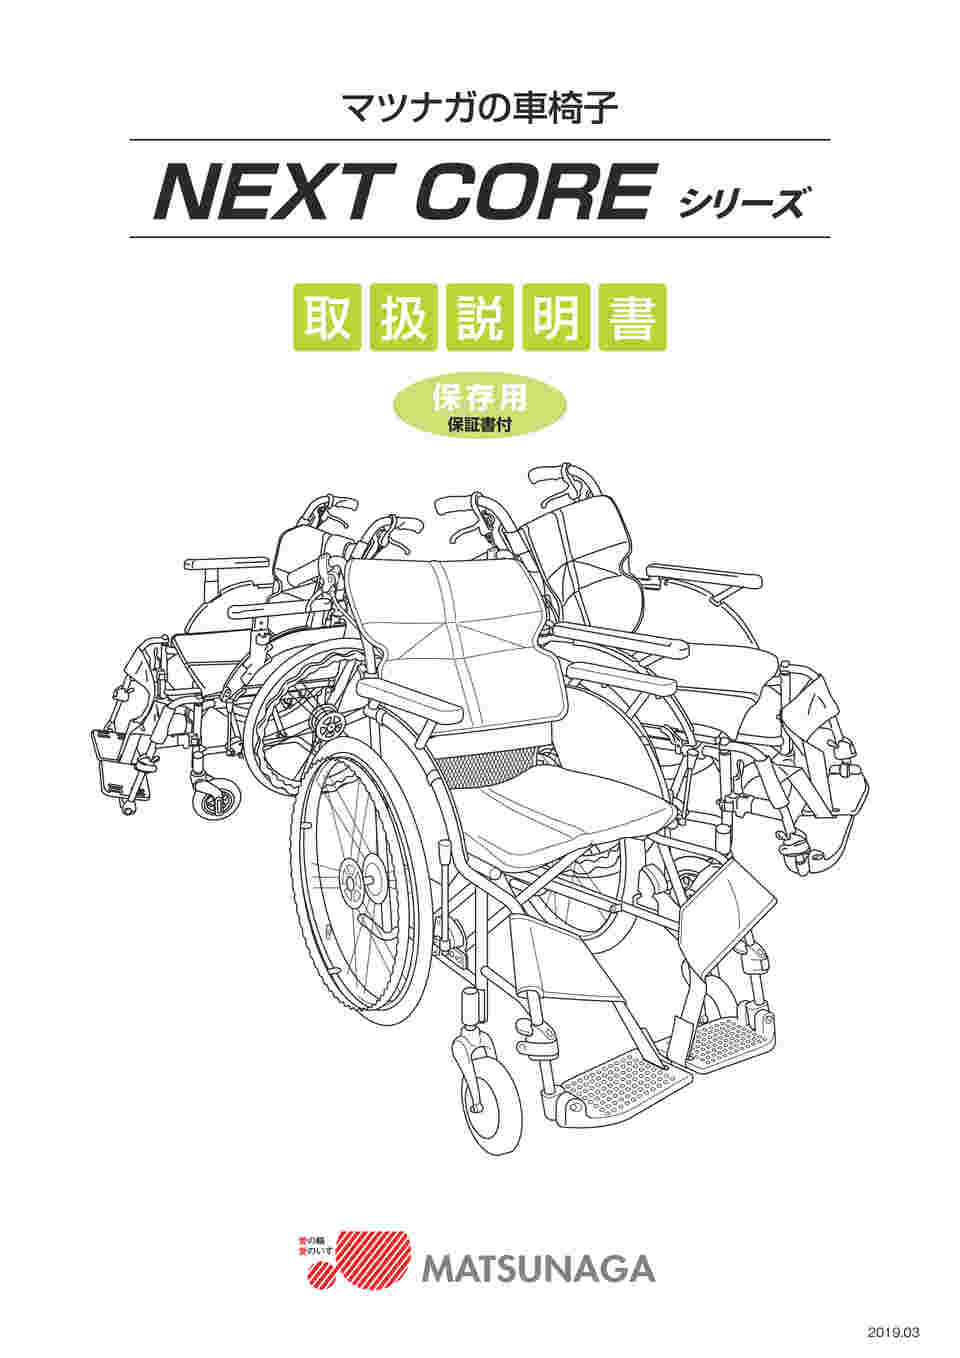 33750円 買い取り 車椅子 折りたたみ 松永製作所 ネクストコア-アジャスト NEXT-51B アルミ製 多機能モジュール自走式車椅子67 500円